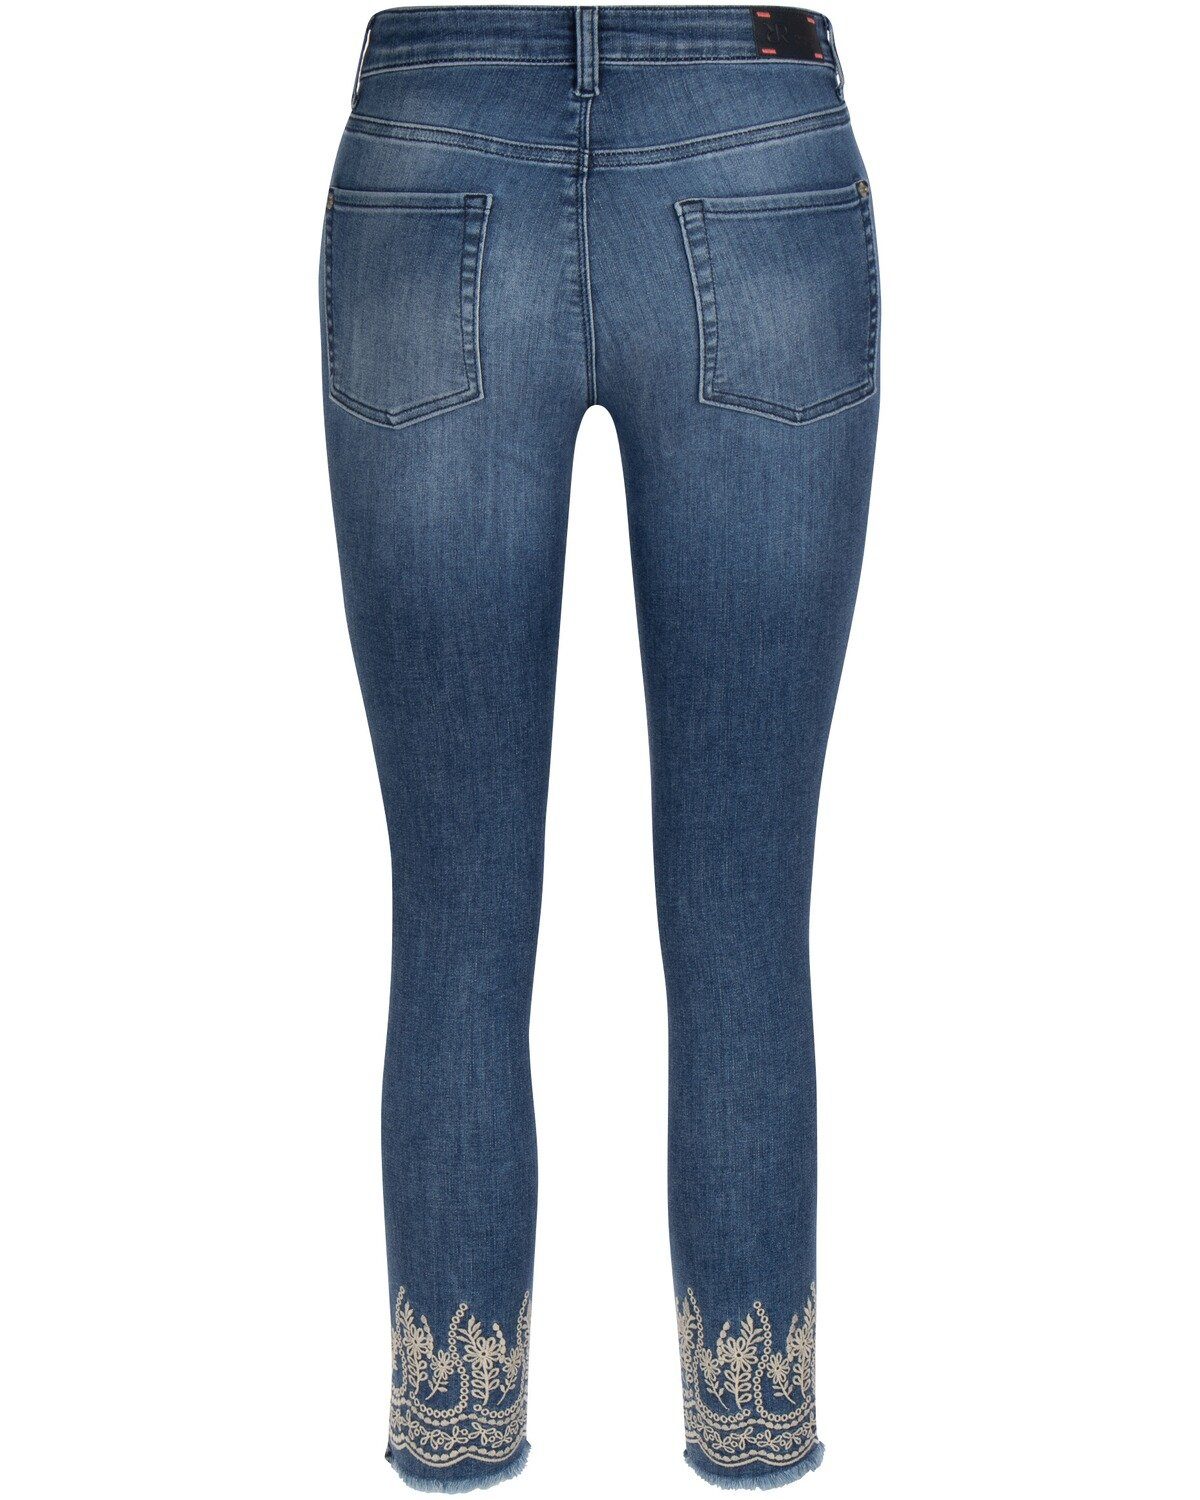 Raffaello Rossi 5-Pocket-Jeans »7/8-Jeans Jane Stick« online kaufen | OTTO